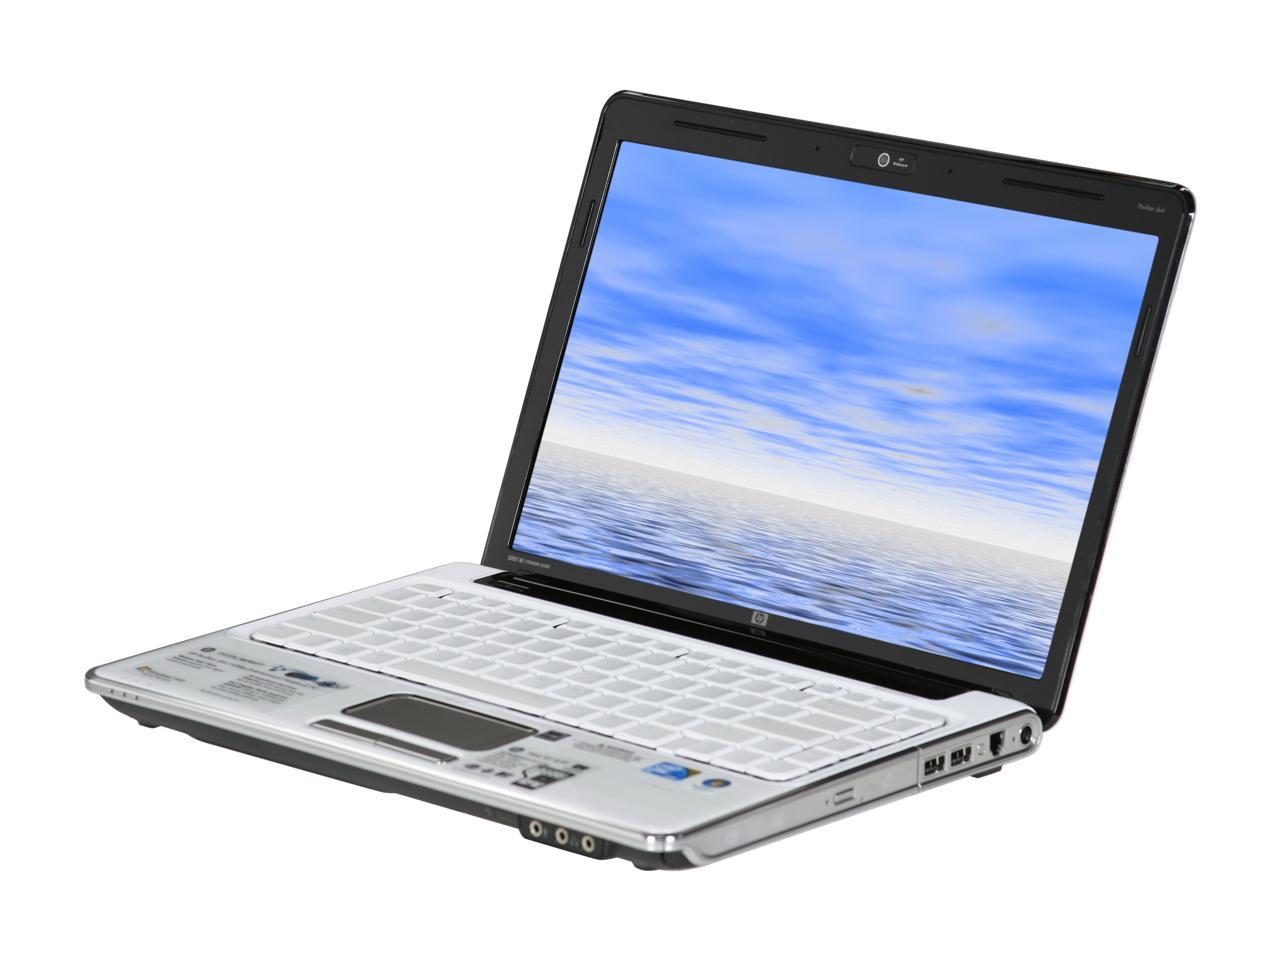 HP Laptop Pavilion dv4-1430us Intel Core 2 Duo T6500 (2.10GHz) 4GB 